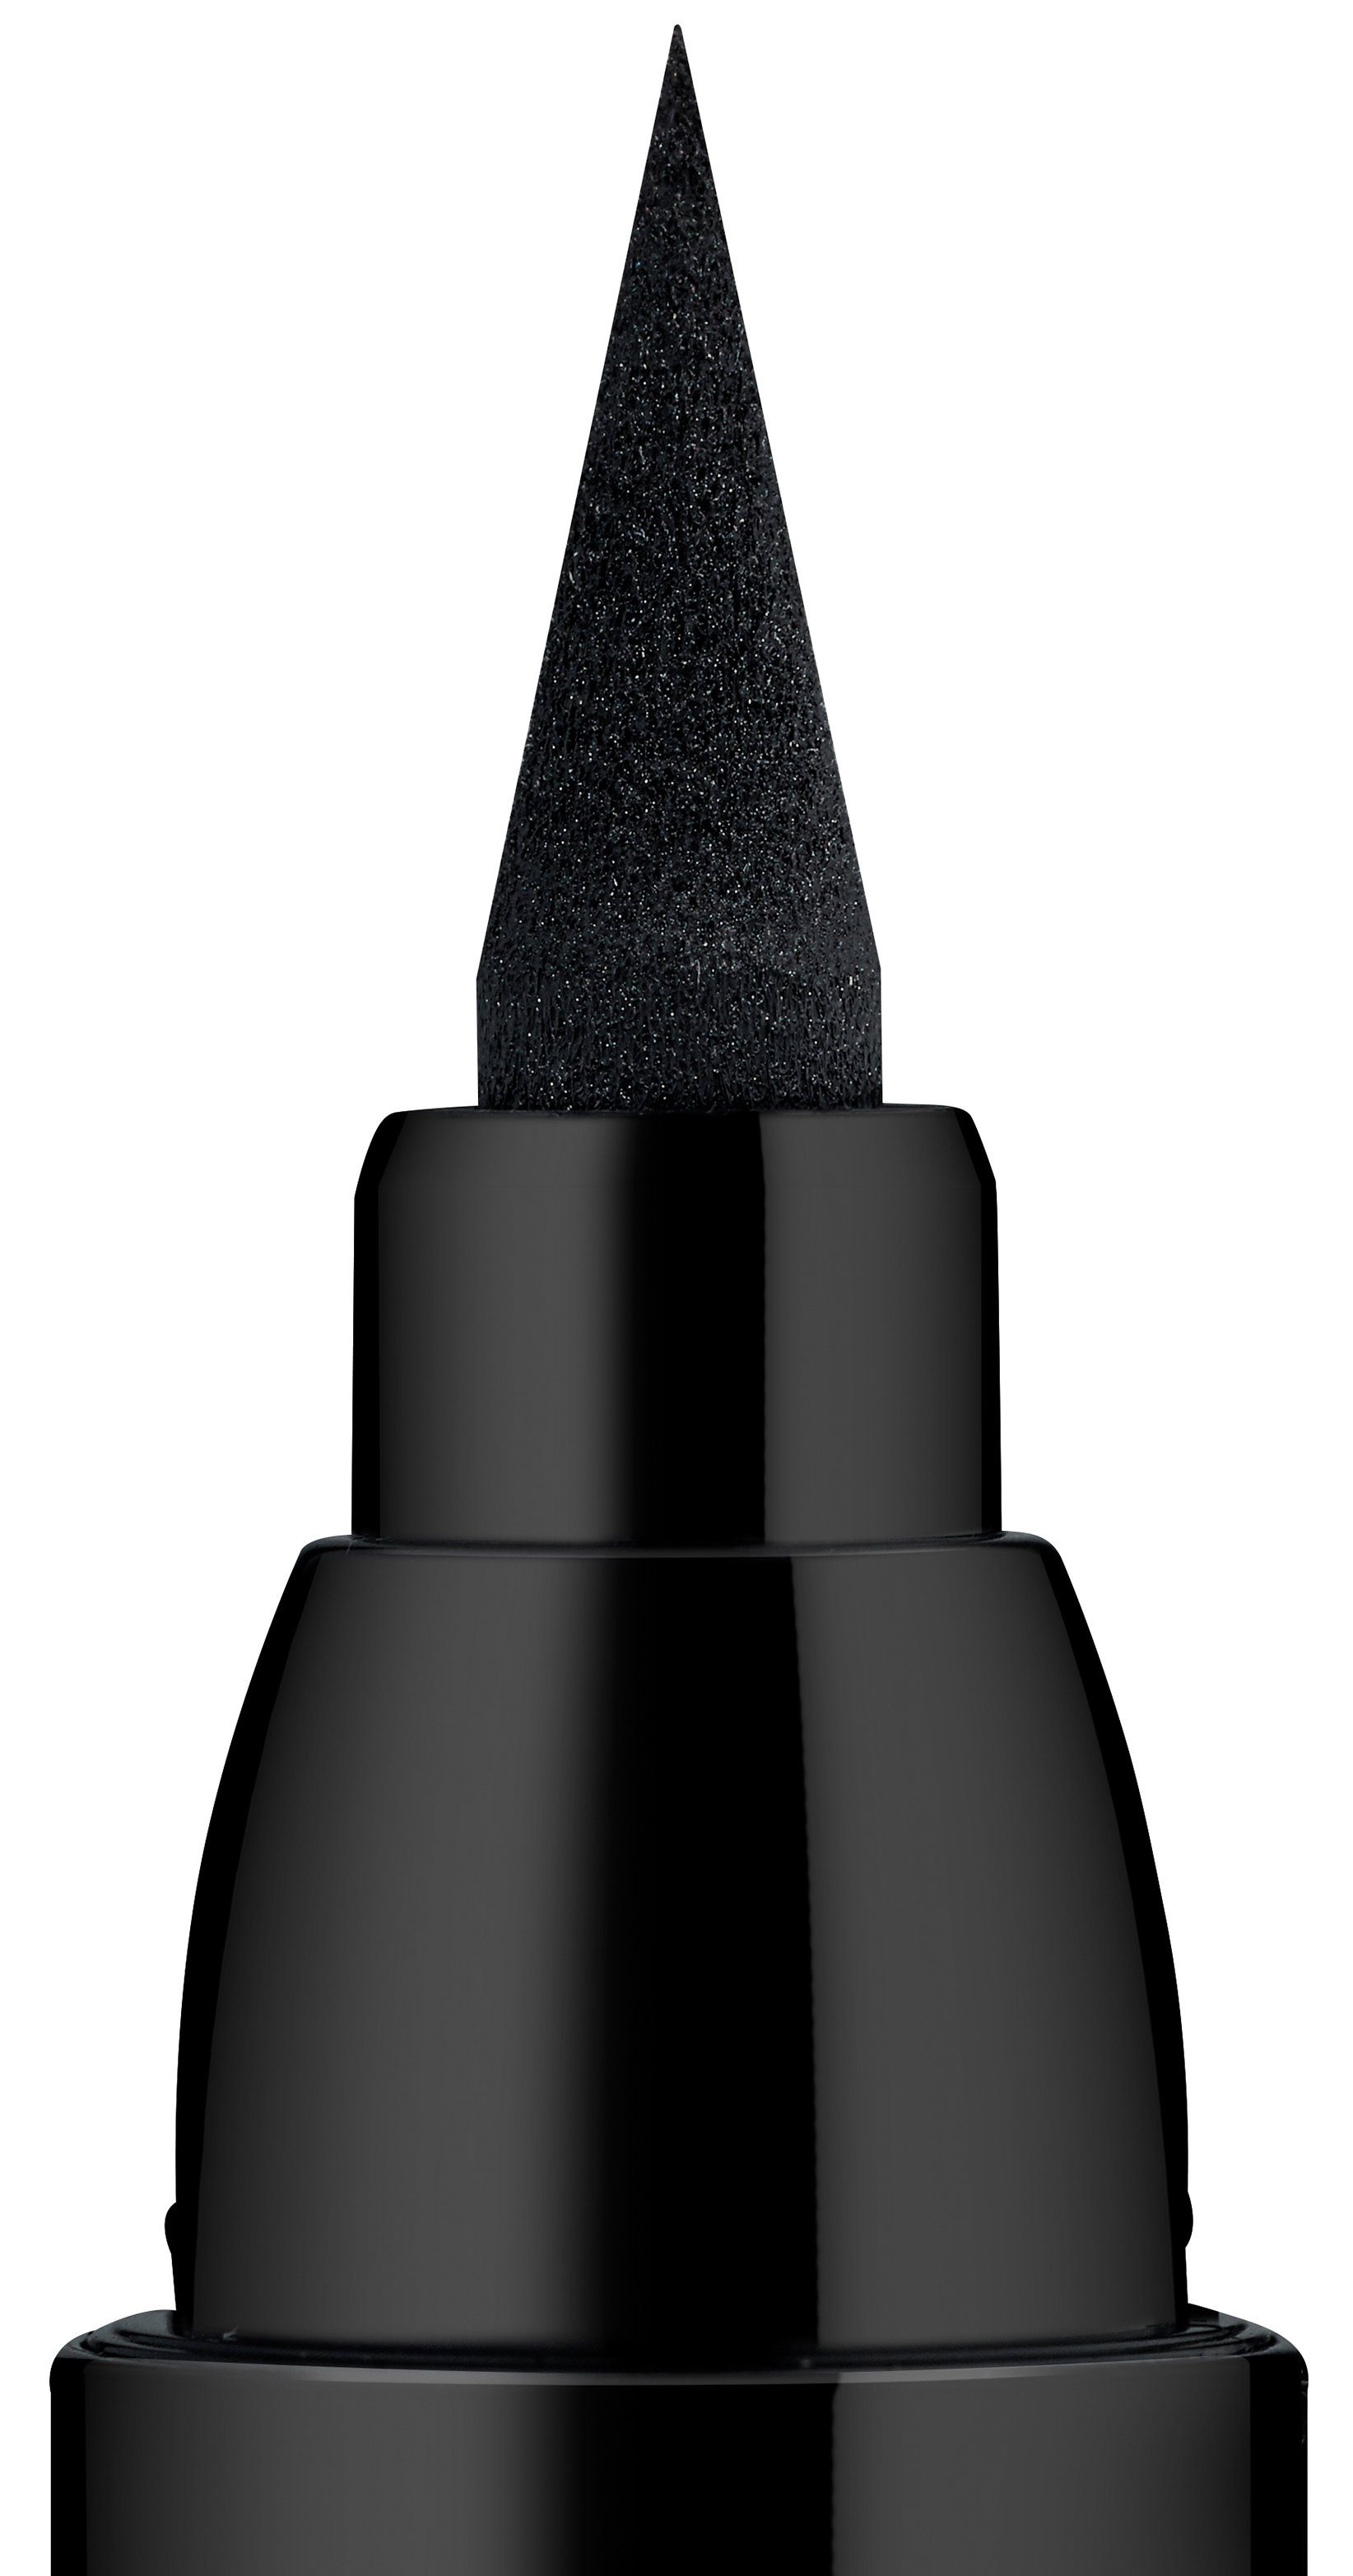 Essence Eyeliner PRINCESS LINER waterproof, Lash black 5-tlg